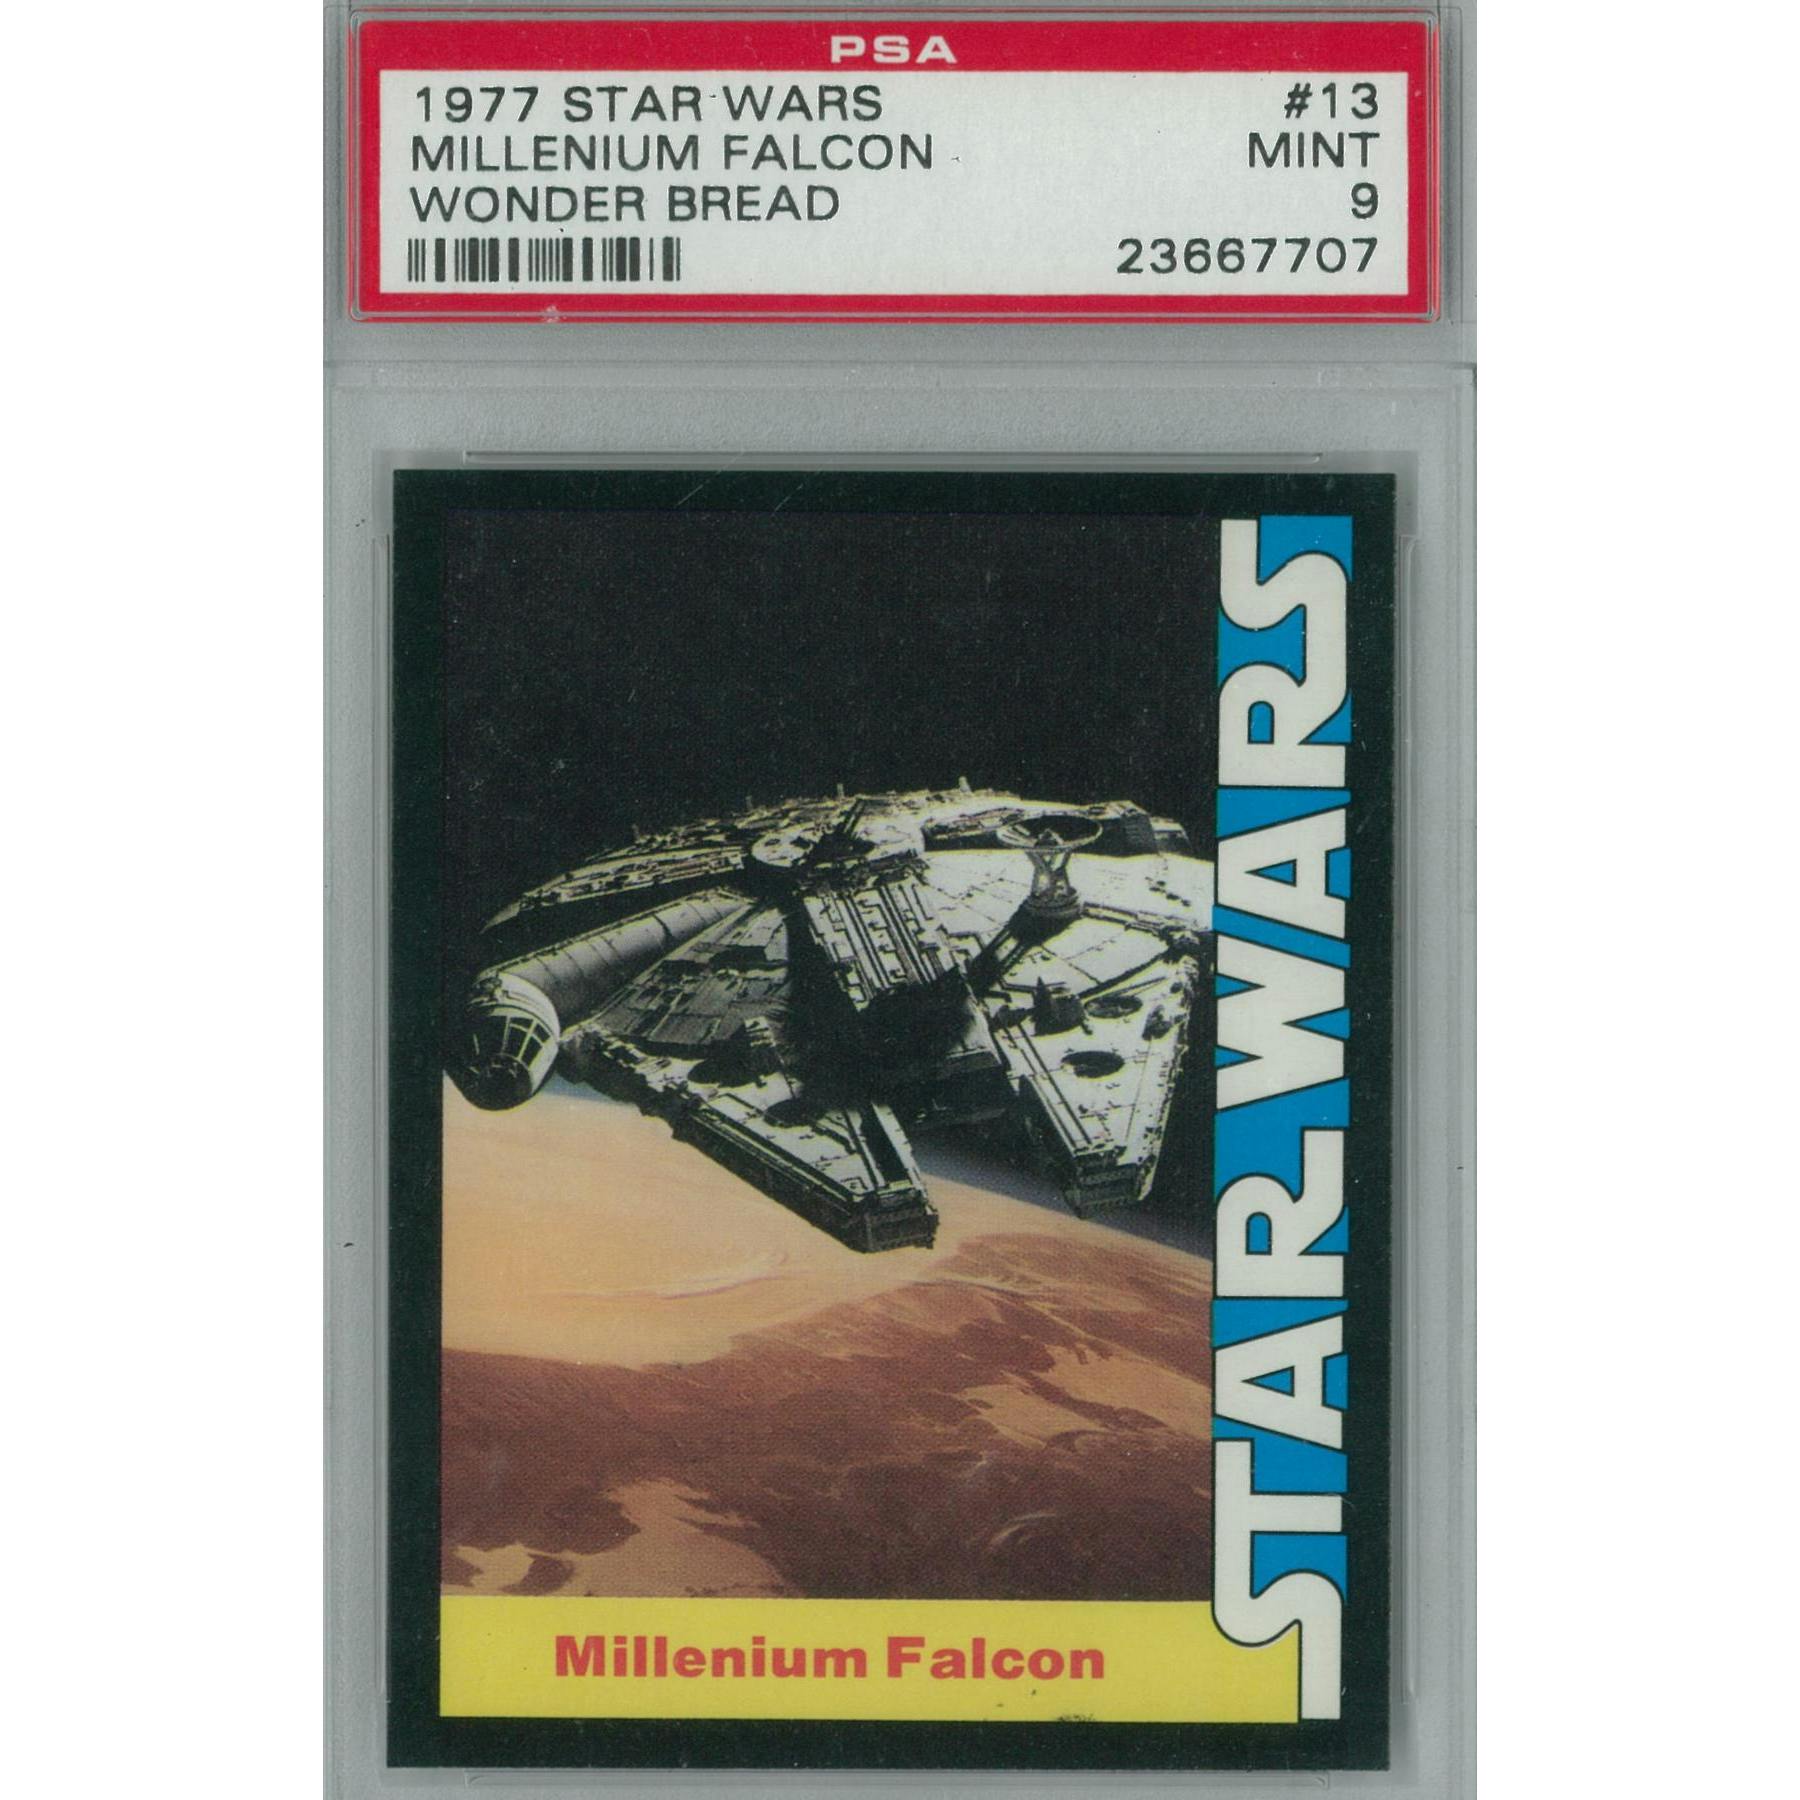 1977 Star Wars Wonder Bread 13 Millenium Falcon Psa 9 Mint